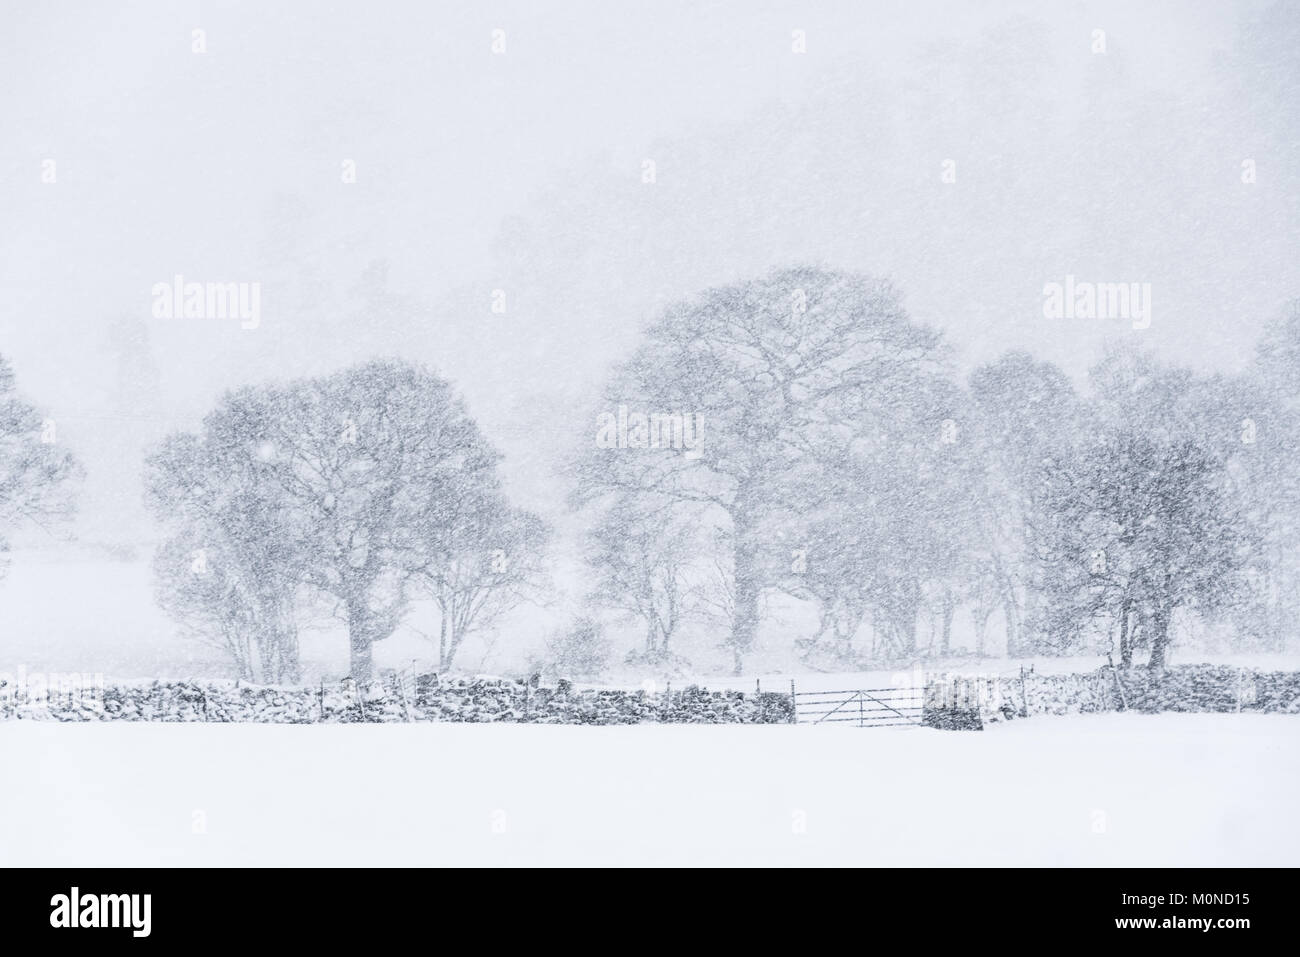 Un árbol solitario añade contraste con un paisaje blanco durante una tormenta de nieve Foto de stock